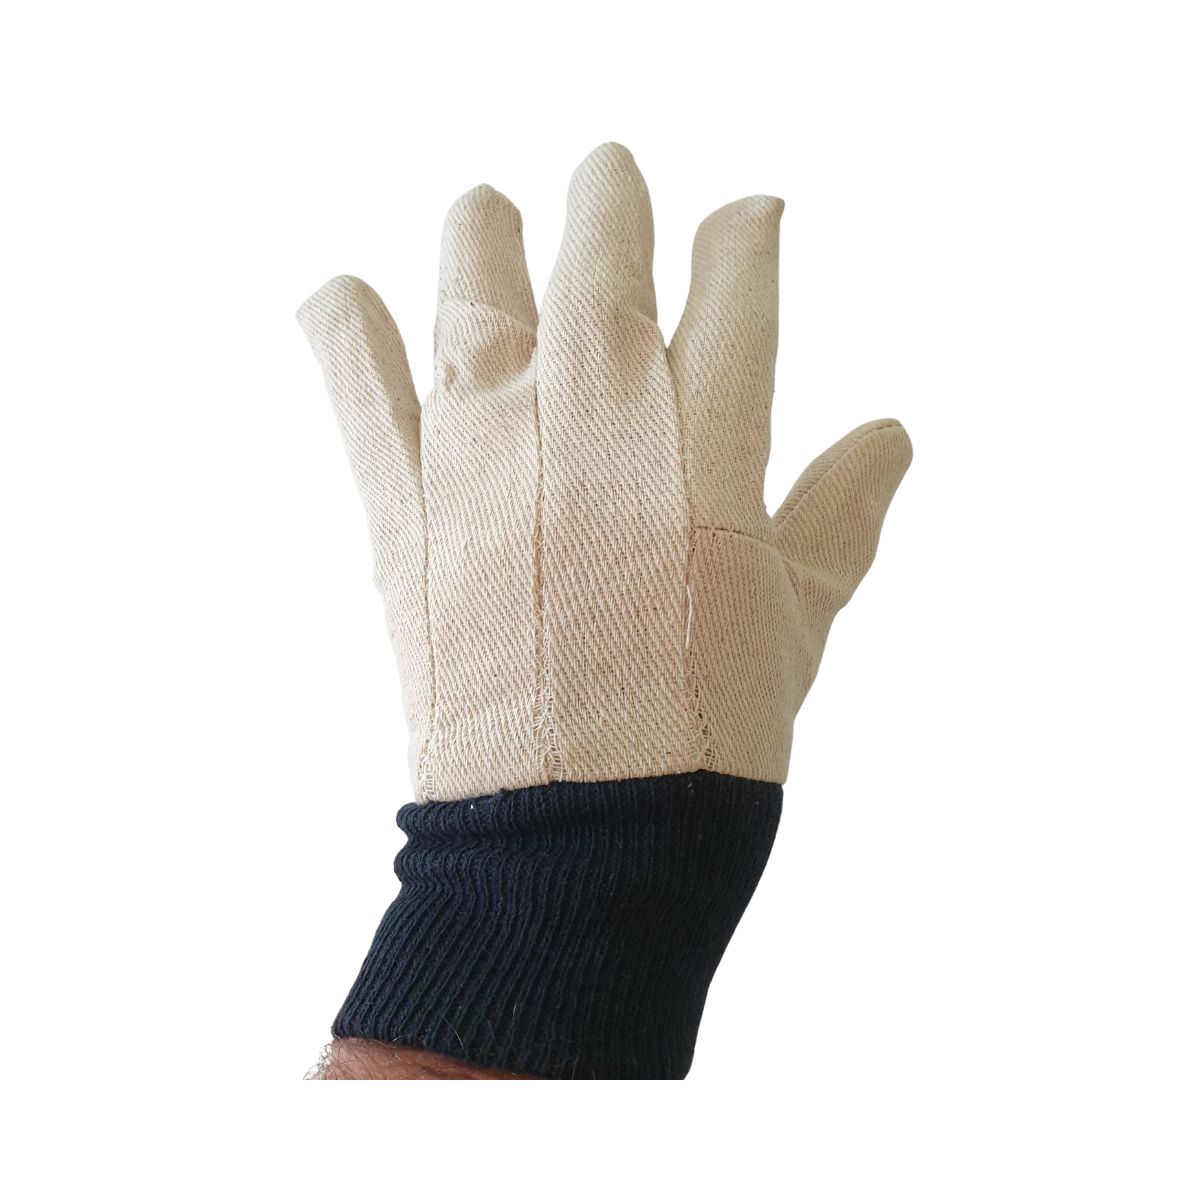 SafeRite® Cotton Drill Glove - Size Small/Medium SR747W-LOC (Pack of 12)